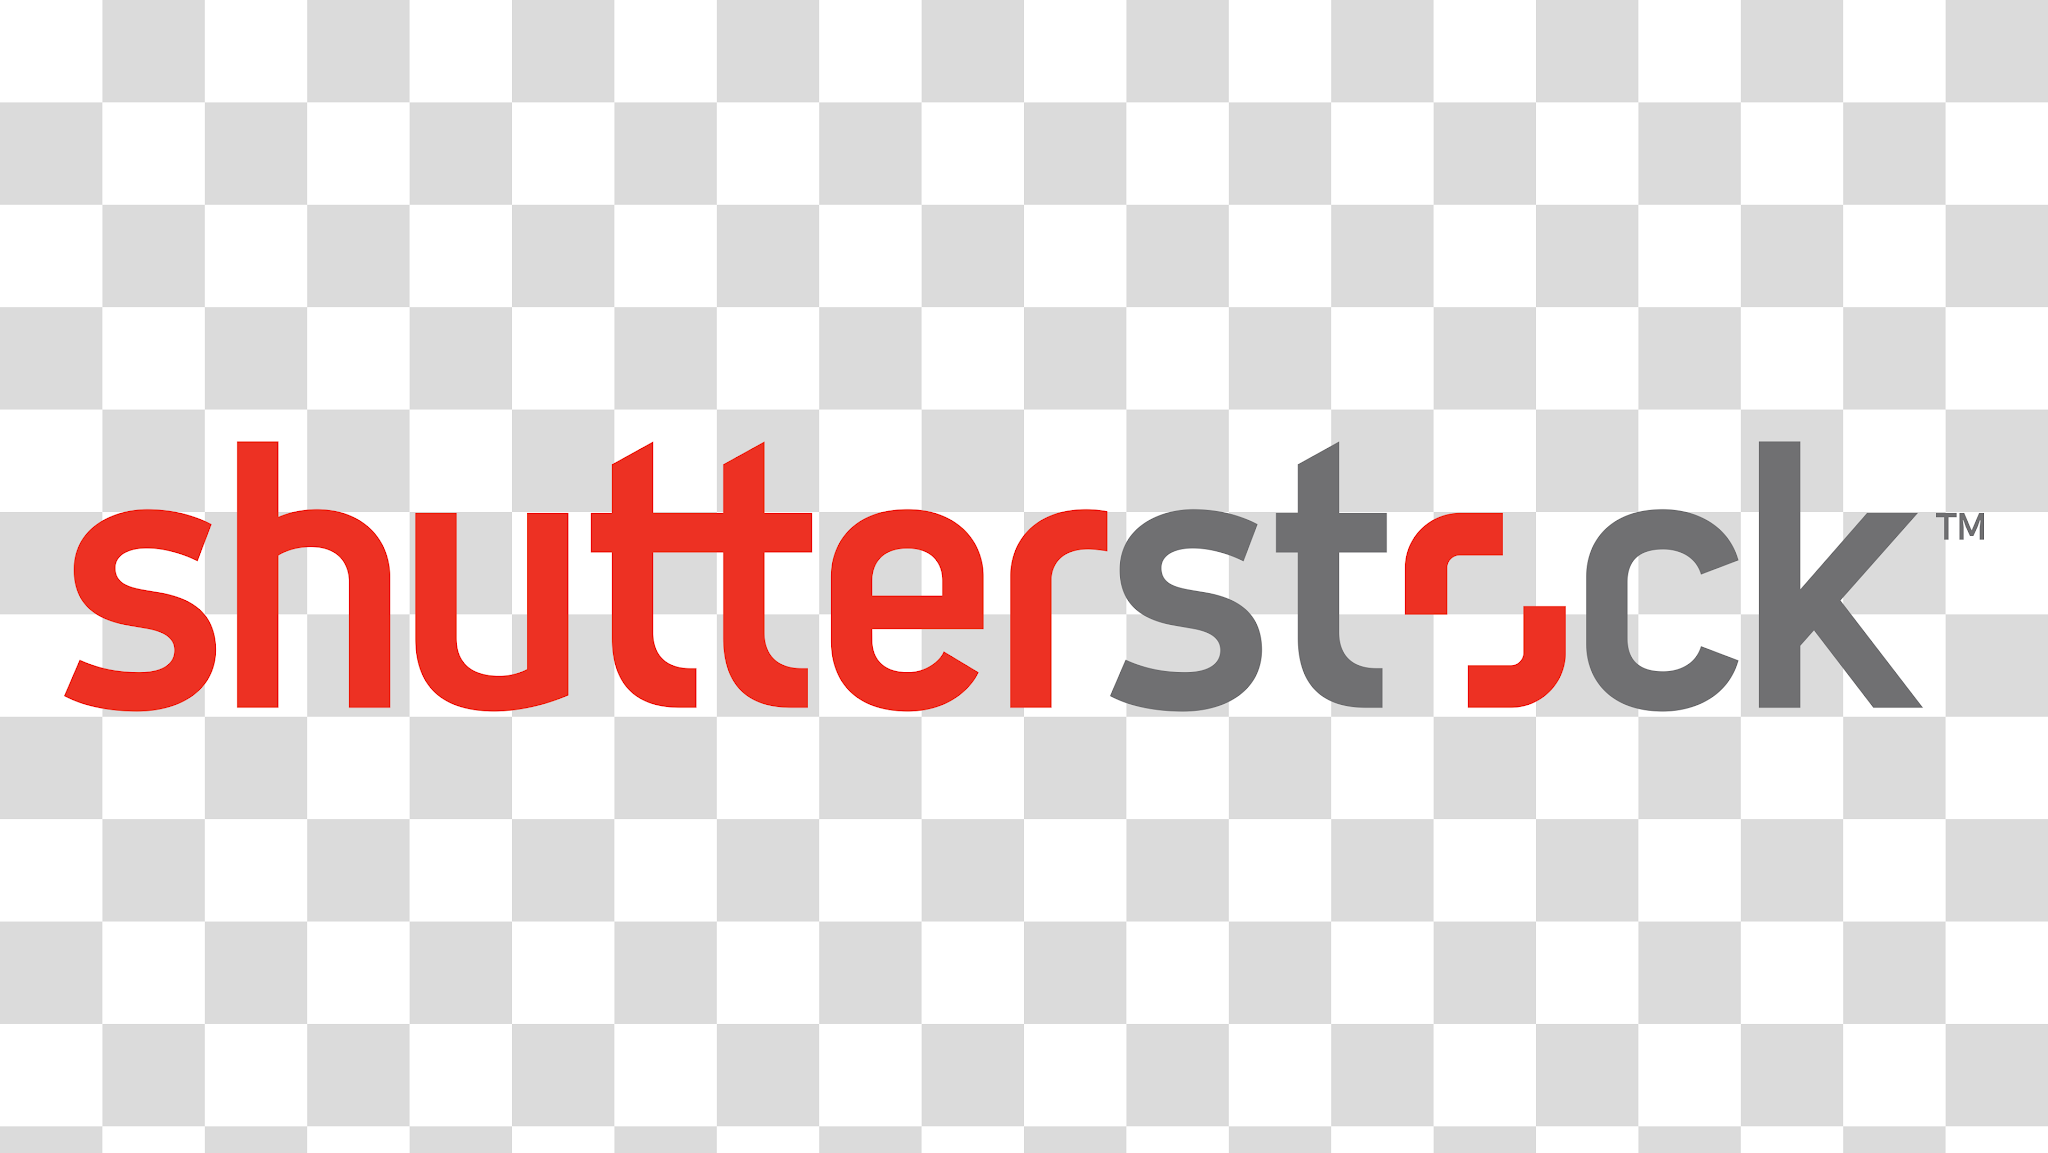 Shutterstock Logo PNG Transparent Image